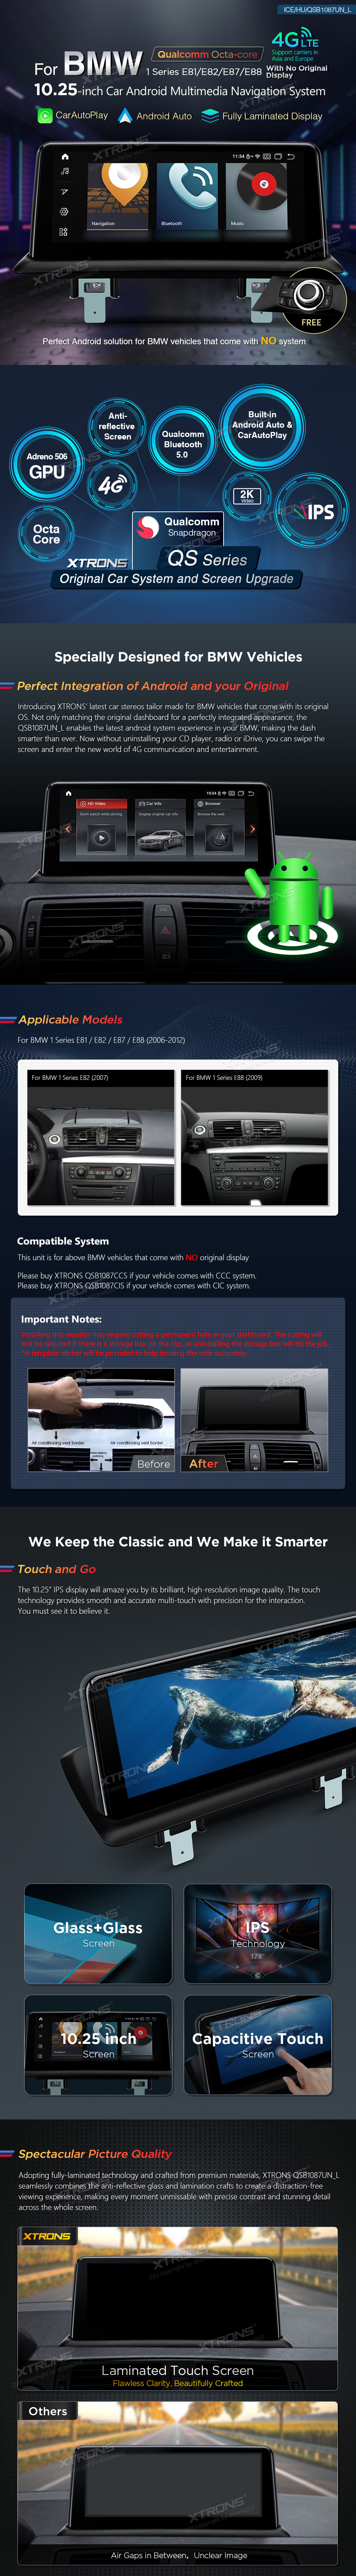 XTRONS Estéreo de coche de pantalla táctil IPS de 10.25 pulgadas para BMW  Serie 1 E81 E82 E87 E88 sin pantalla original, Android 11 Radio navegación